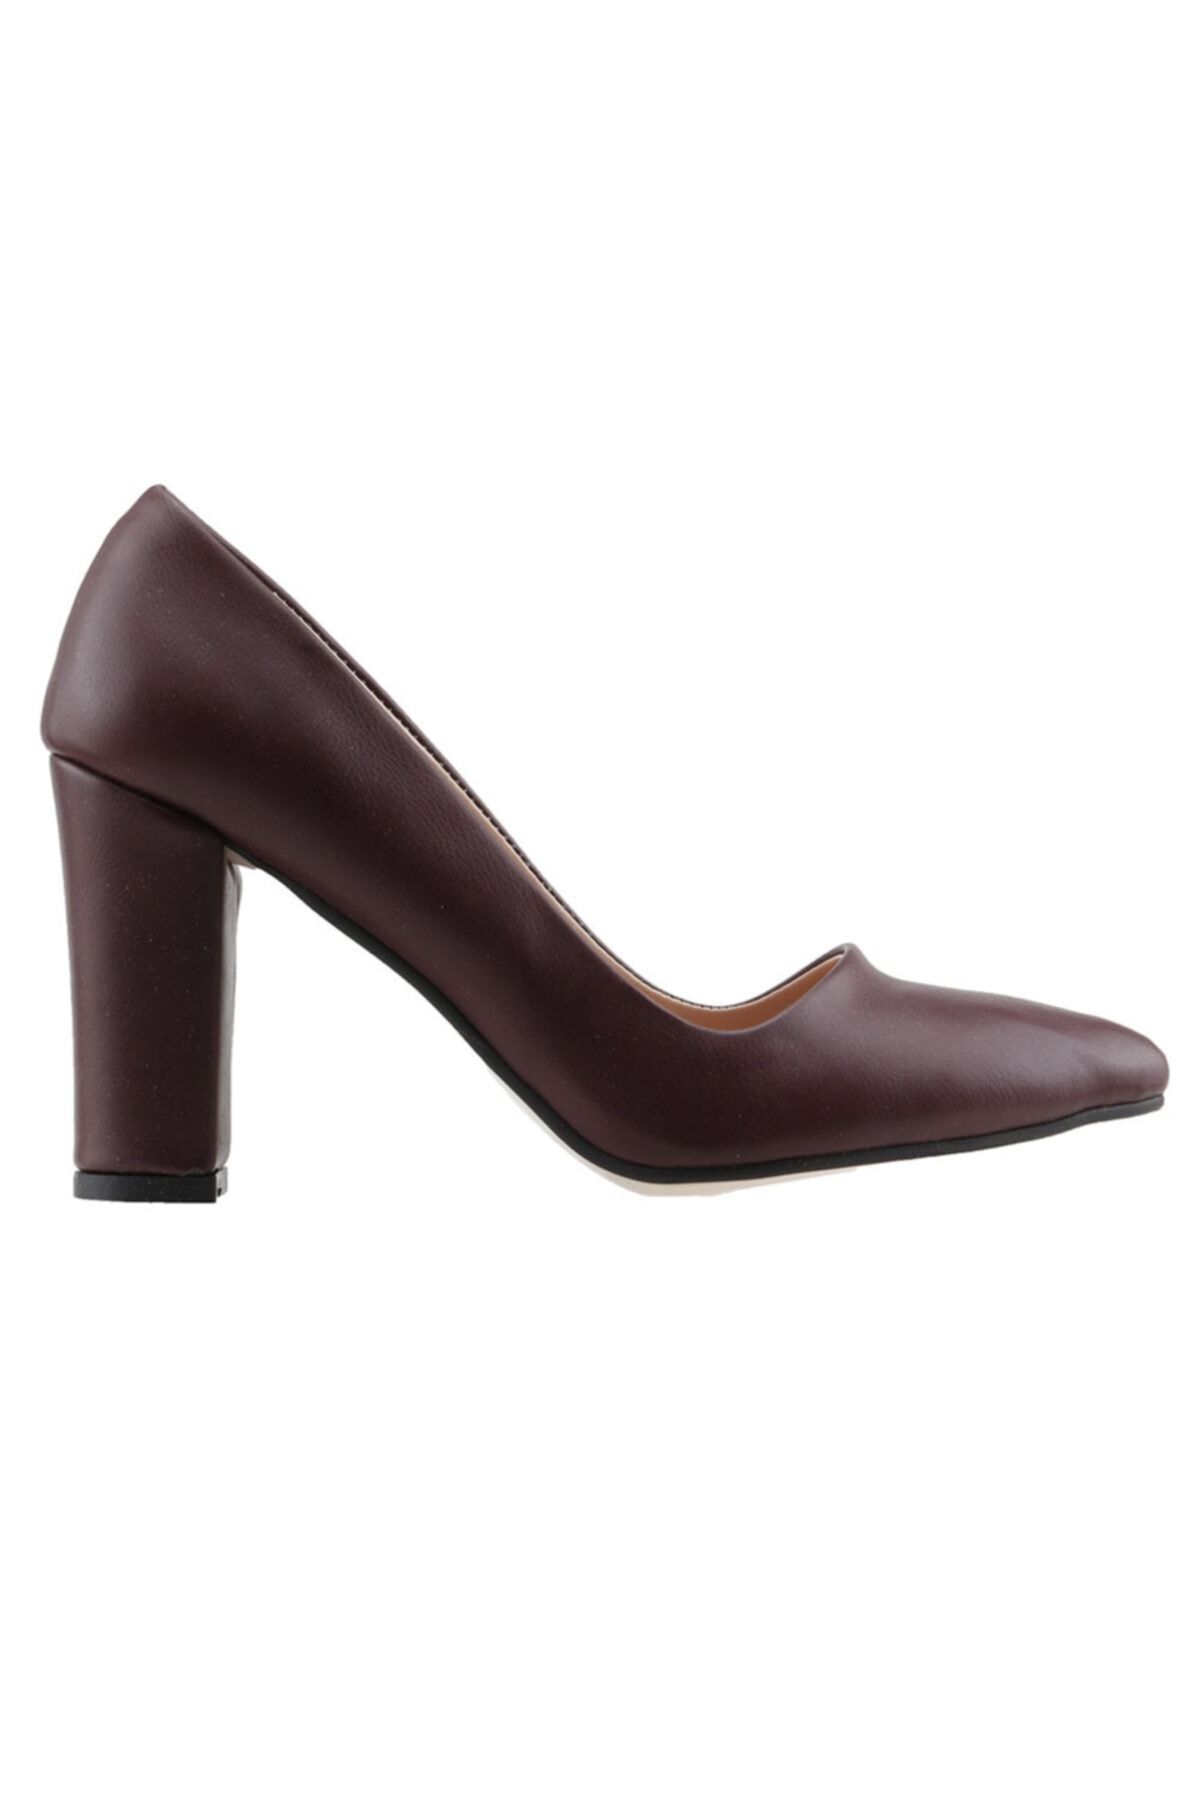 Ayakland 137029-311 Kadın Bordo Cilt 8 cm Topuk Ayakkabı